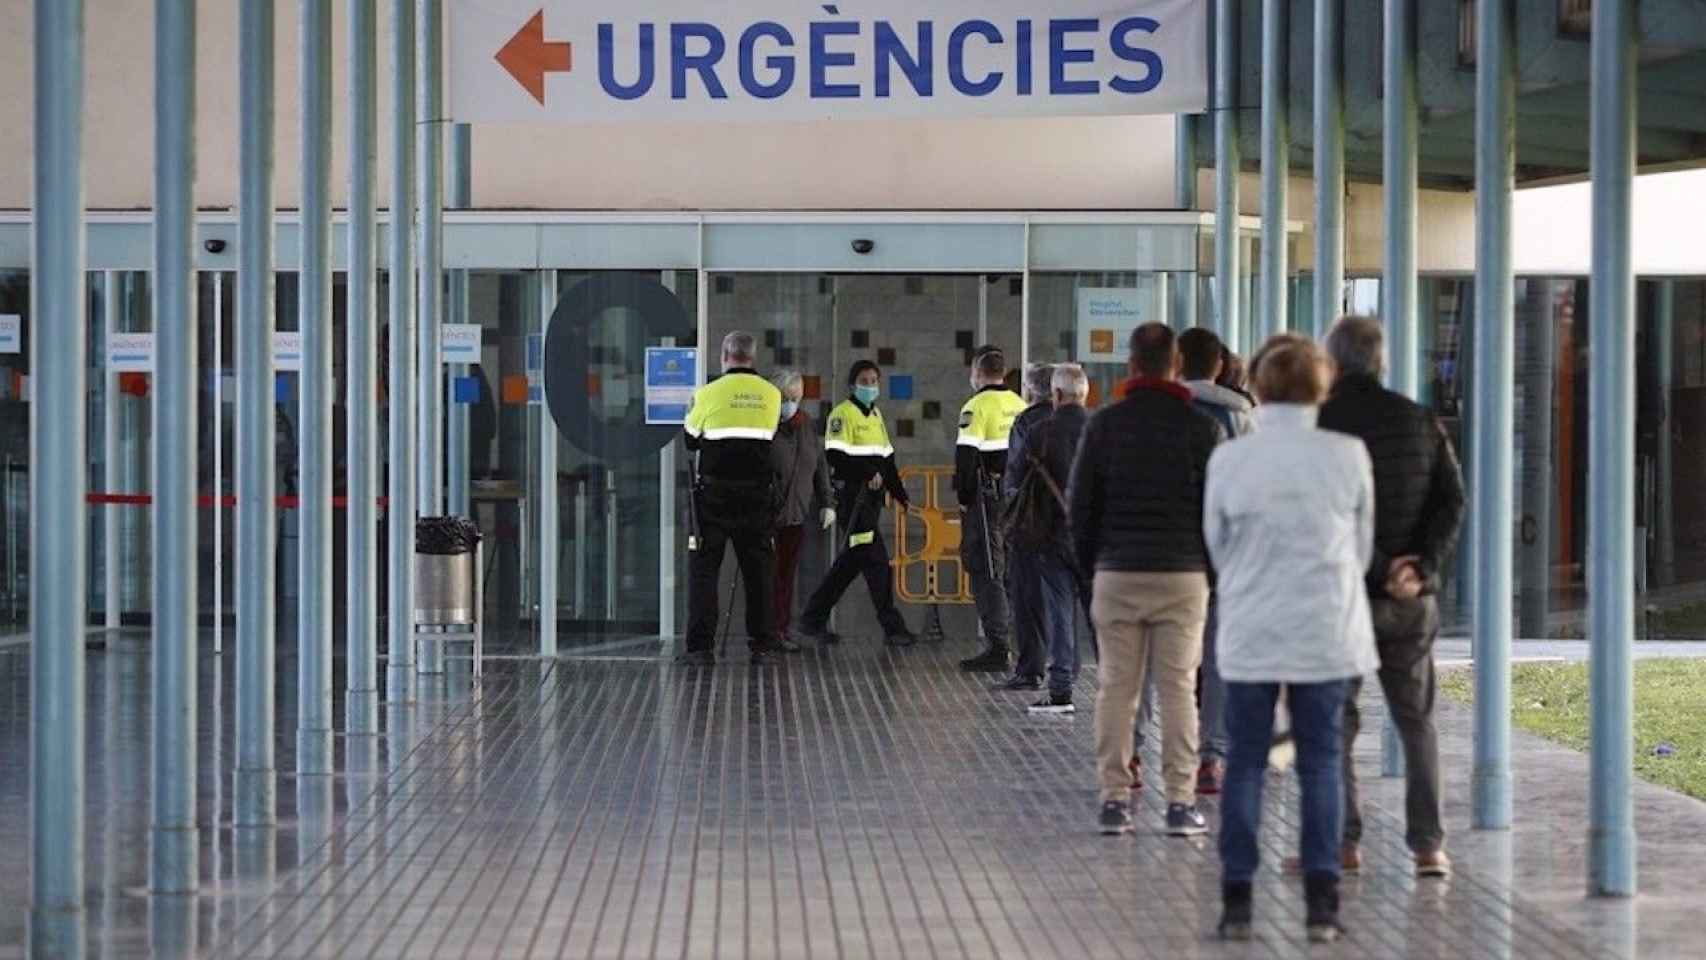 Acceso a la Urgencias del Hospital del Mar, uno de los centros hospitalarios descontrolados / EFE - ALEJANDRO GARCÍA